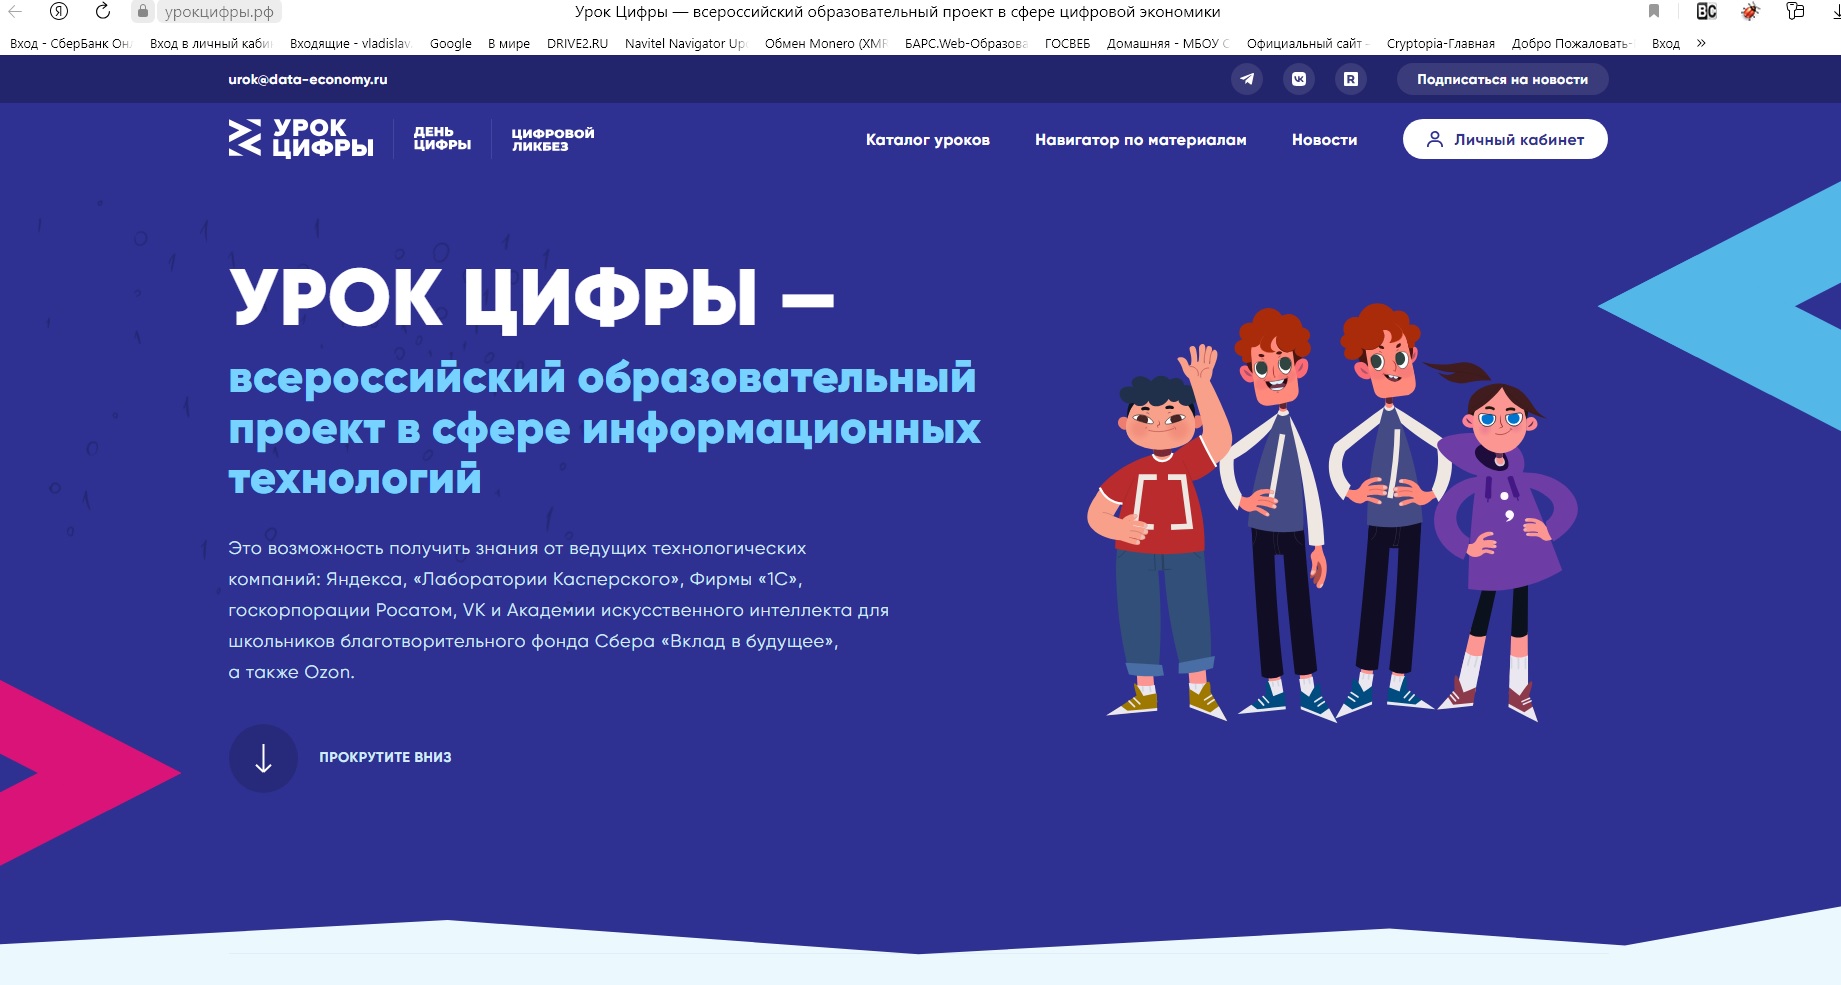 УРОК ЦИФРЫ — всероссийский образовательный проект в сфере информационных технологий.